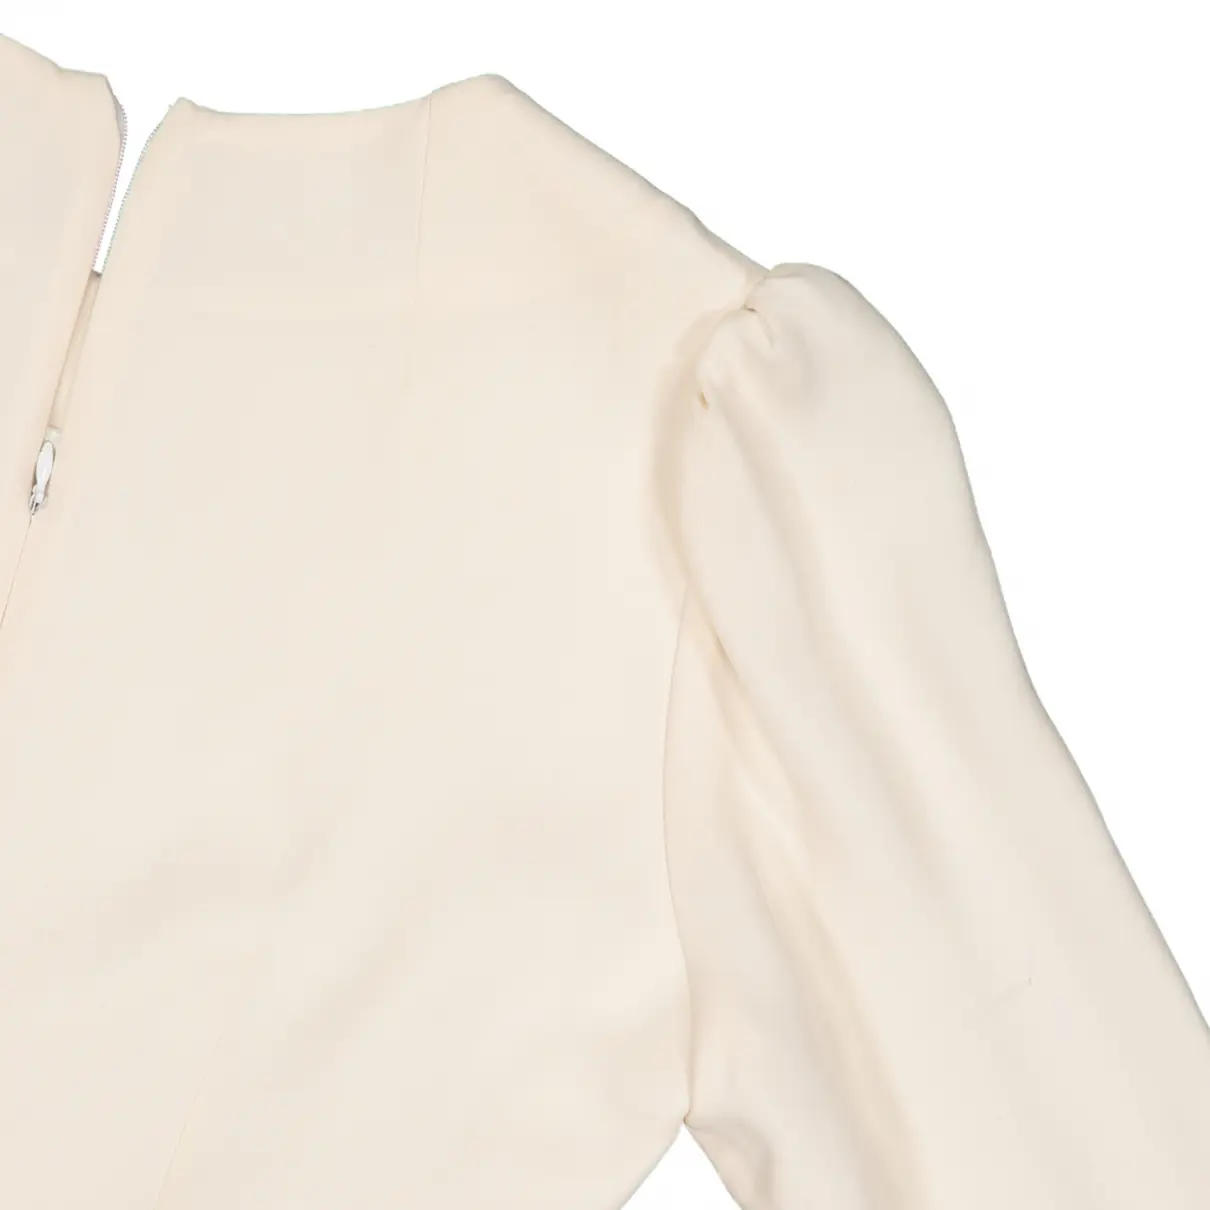 Buy Andrew Gn Silk mid-length dress online